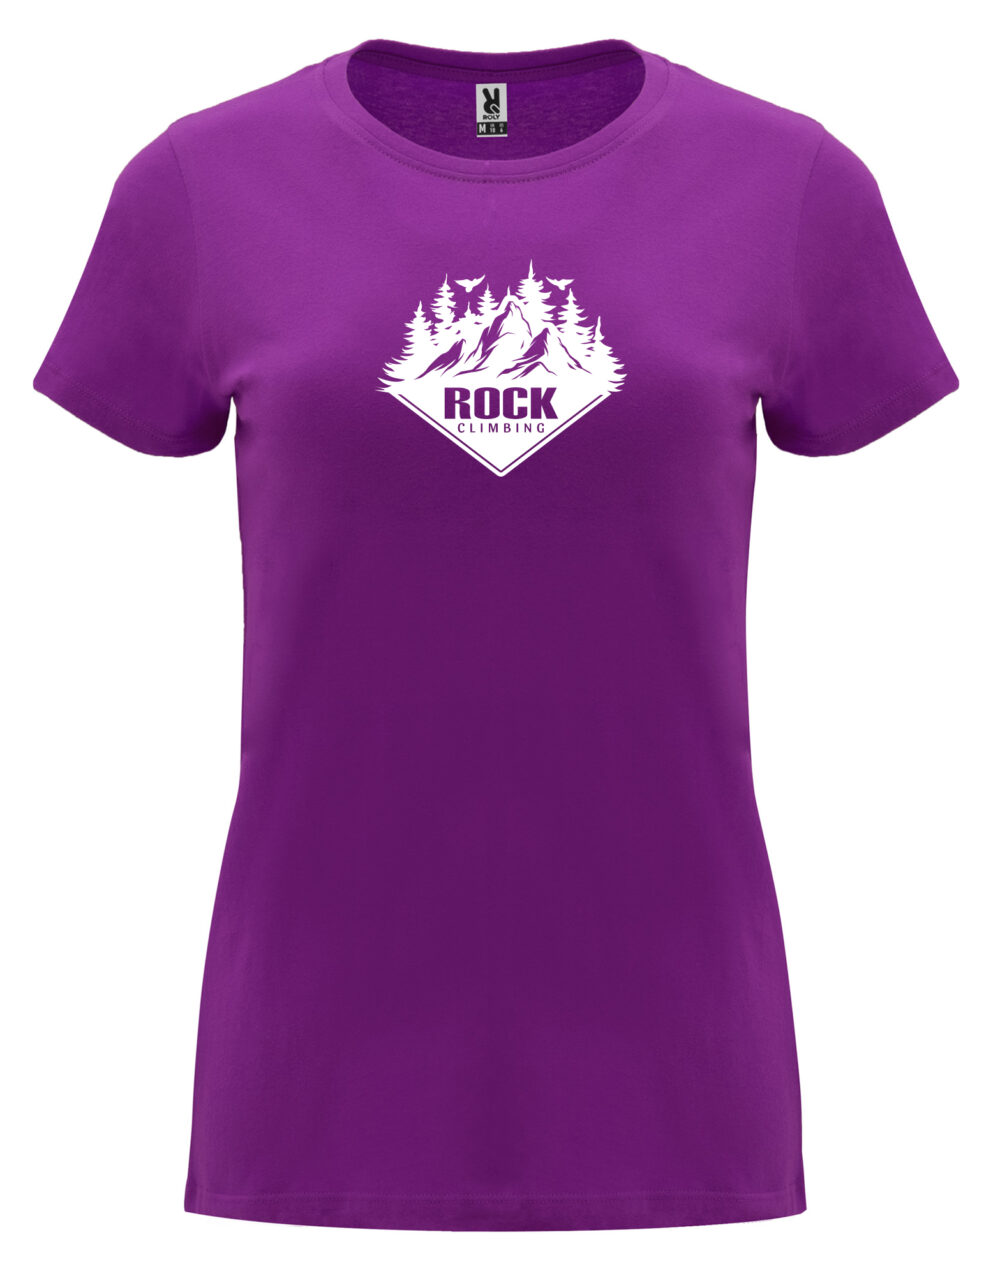 Dámské tričko s potiskem Rock climbing purpurová